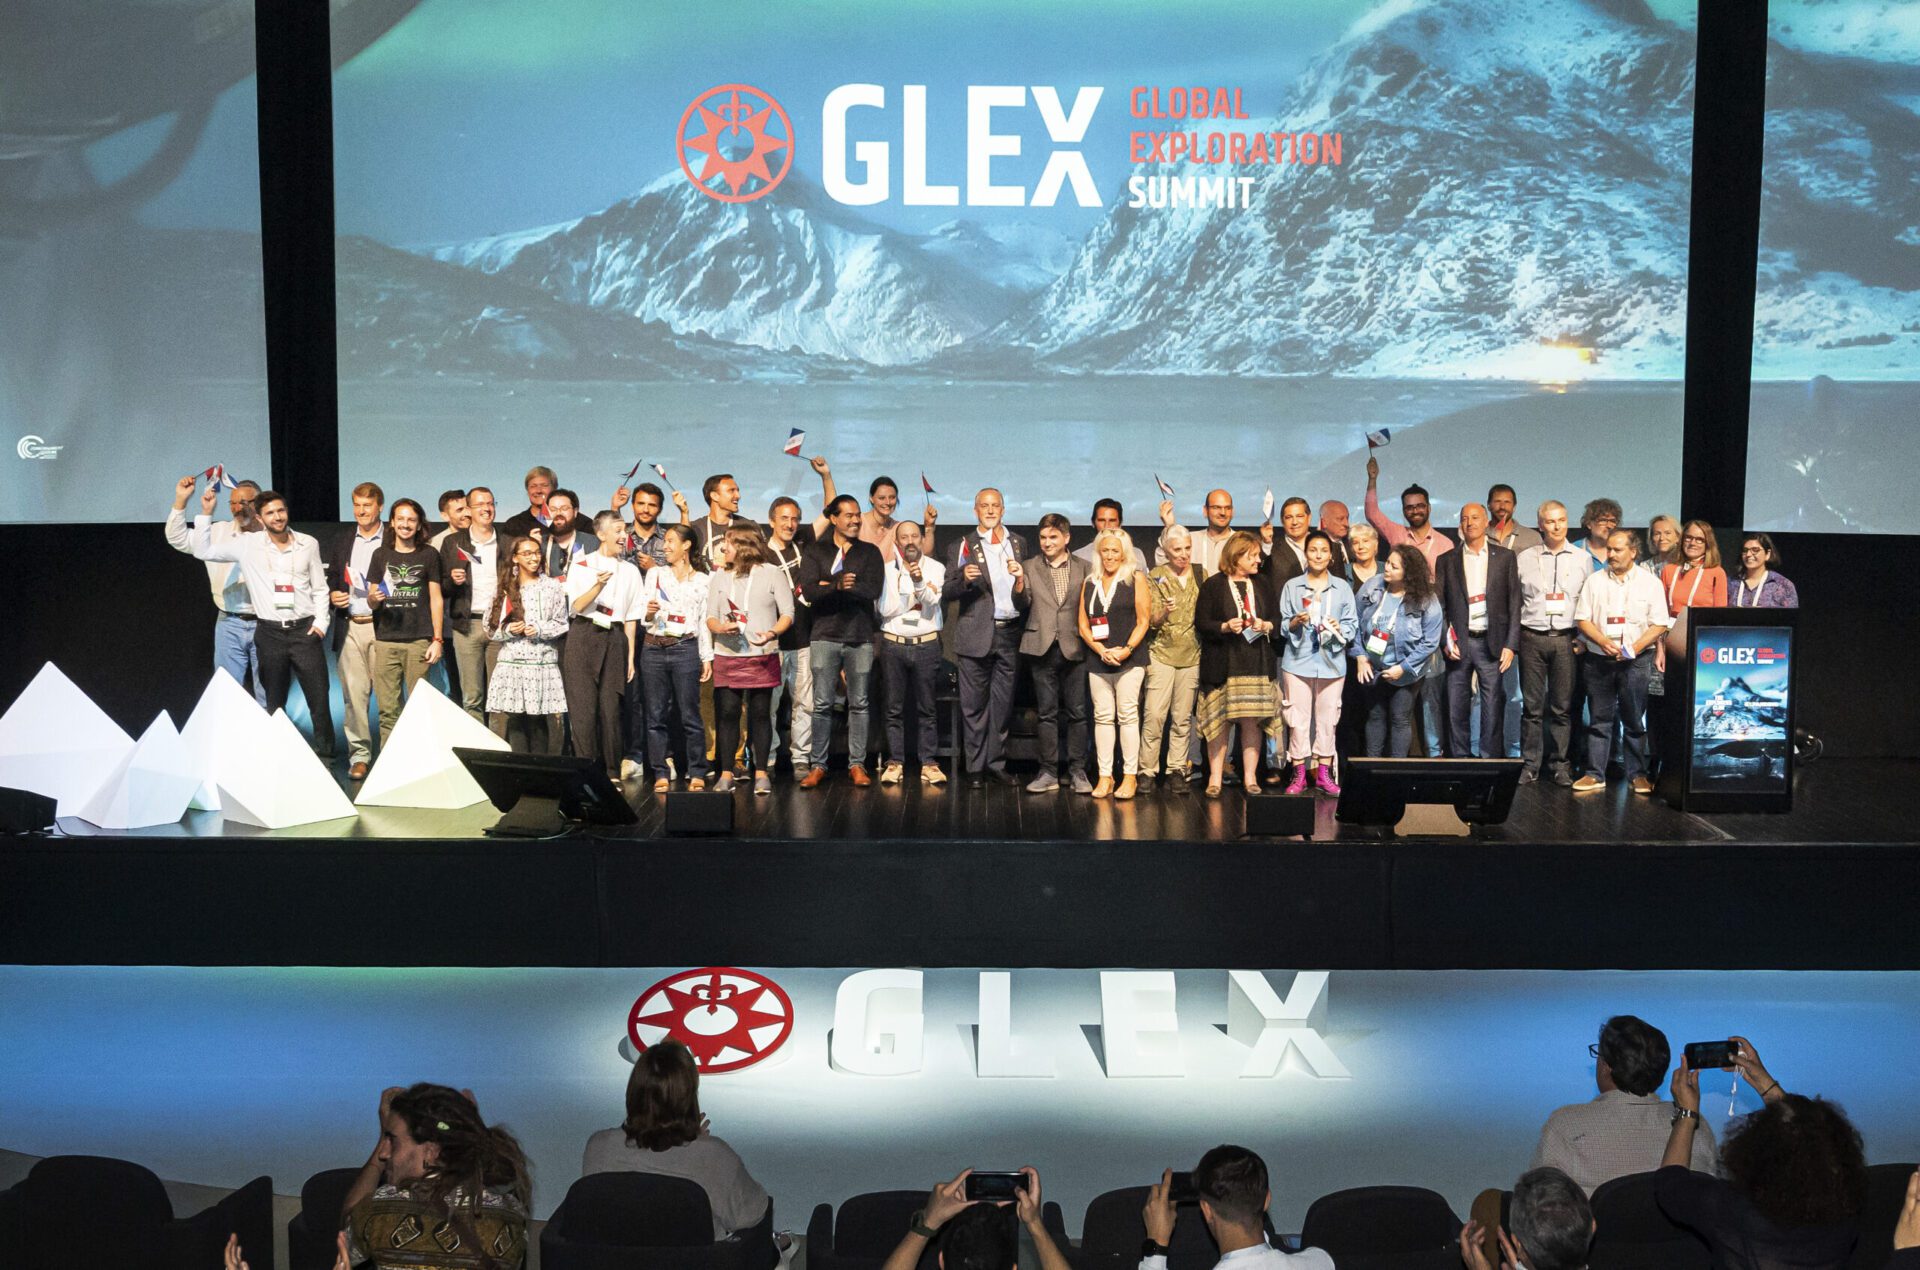 GLEX Summit: Três dias em que algumas das mentes mais brilhantes do planeta partilharam conhecimento